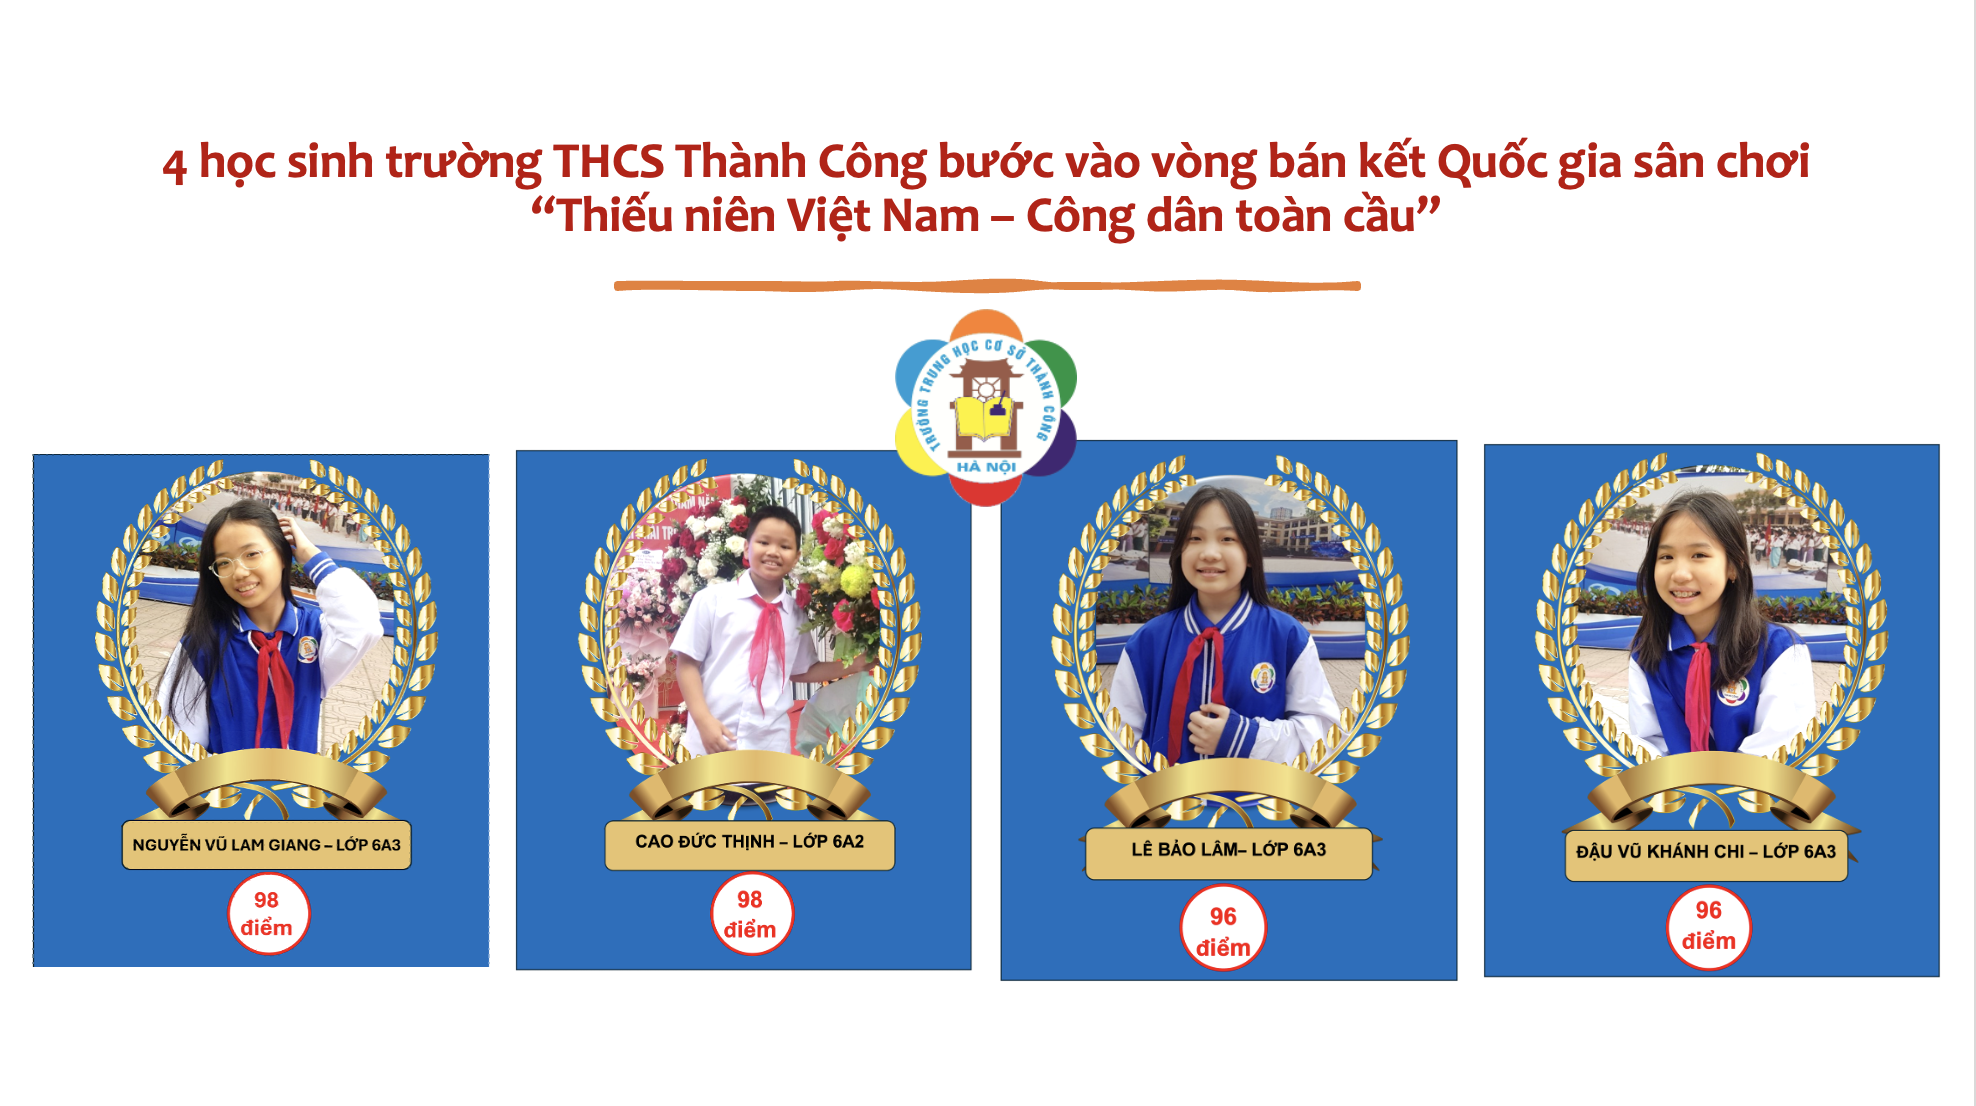 4 học sinh trường THCS Thành Công bước vào vòng bán kết Quốc gia sân chơi “Thiếu niên Việt Nam – Công dân toàn cầu”